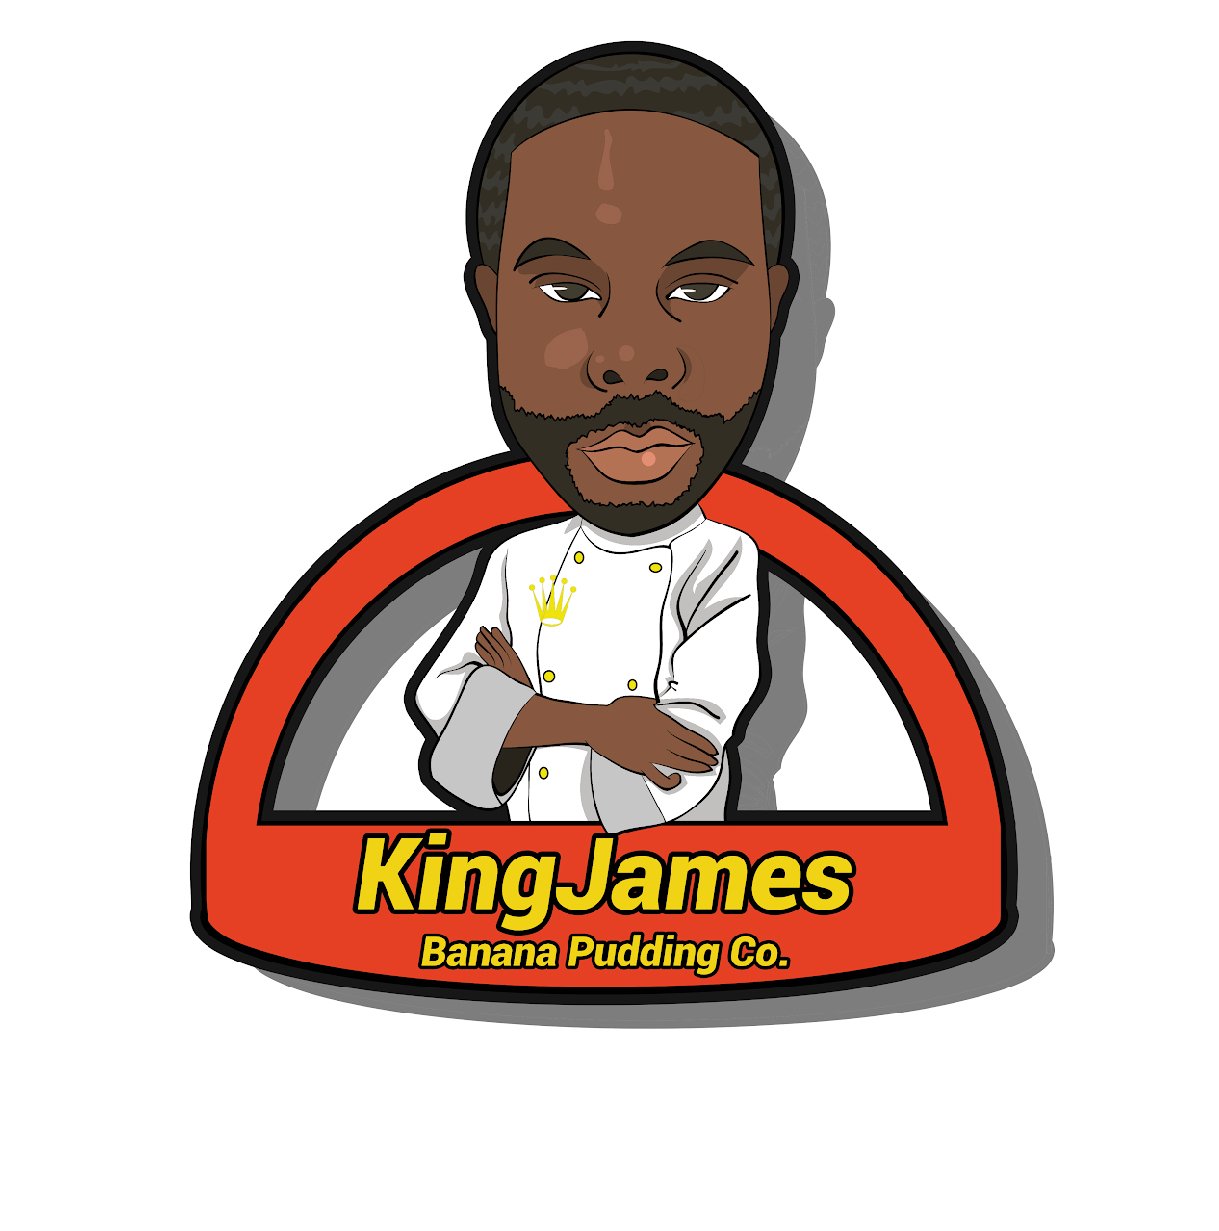 KingJames Banana Pudding Co.